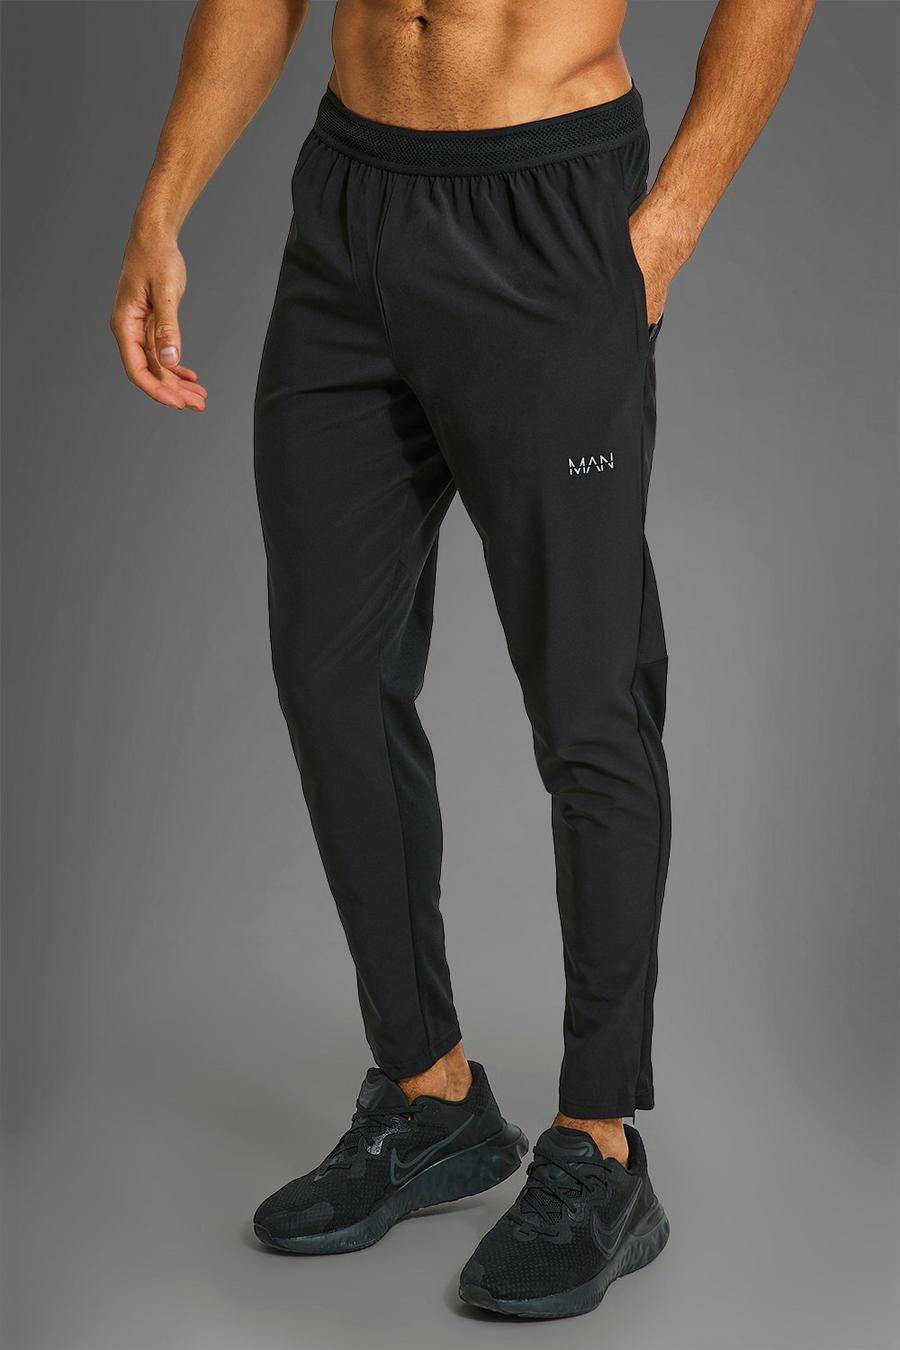 Man Active Performance Jogginghose mit Reißverschluss-Taschen, Black